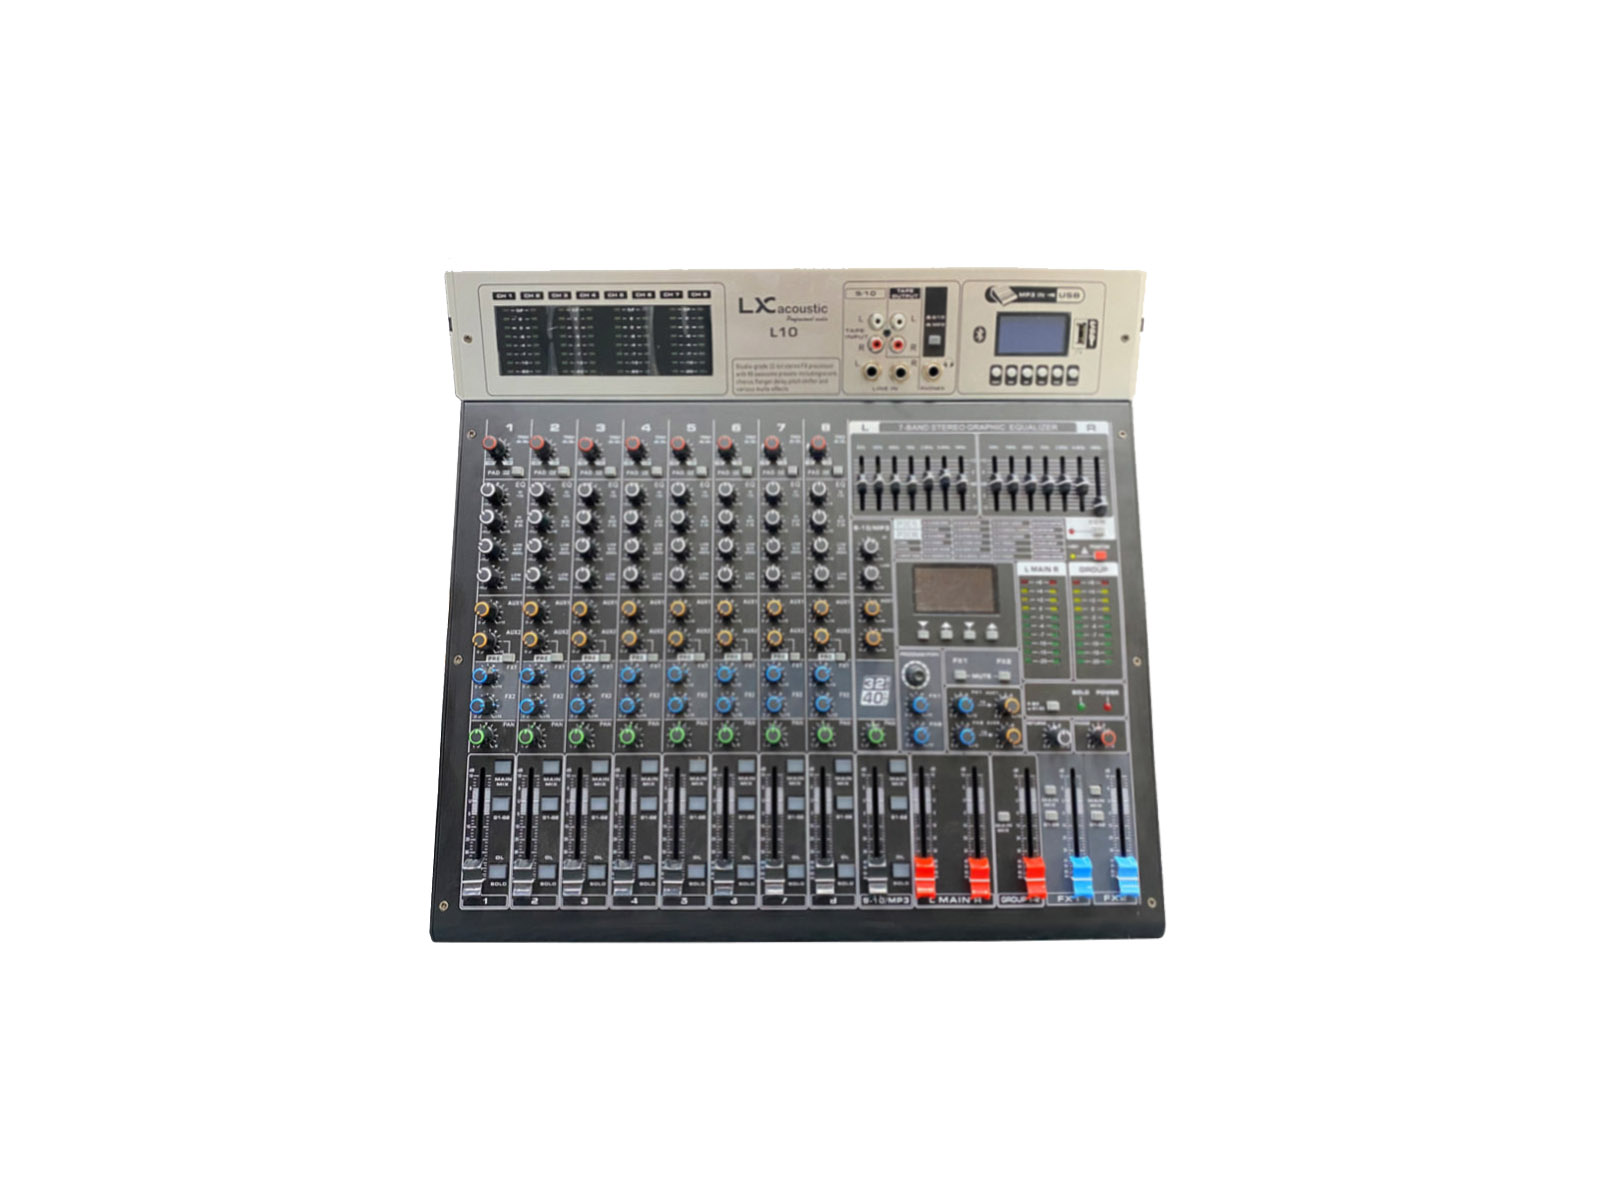 Mixer LX acoustic L10